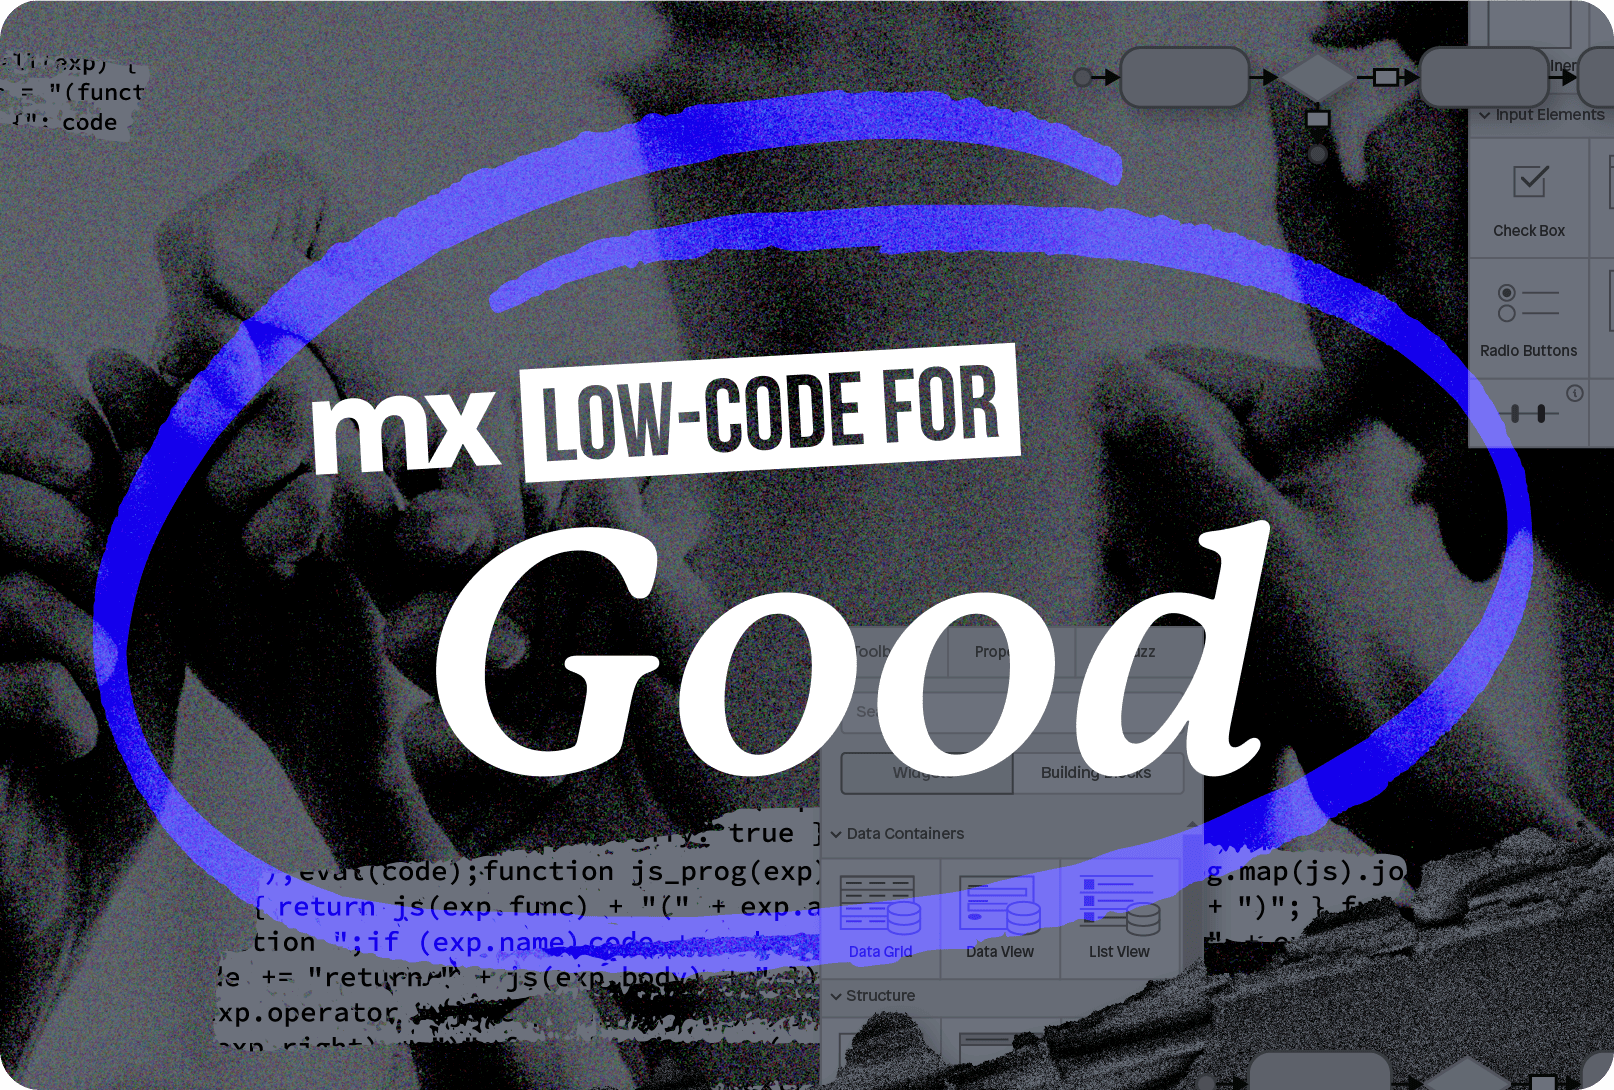 Mendix low-code for good